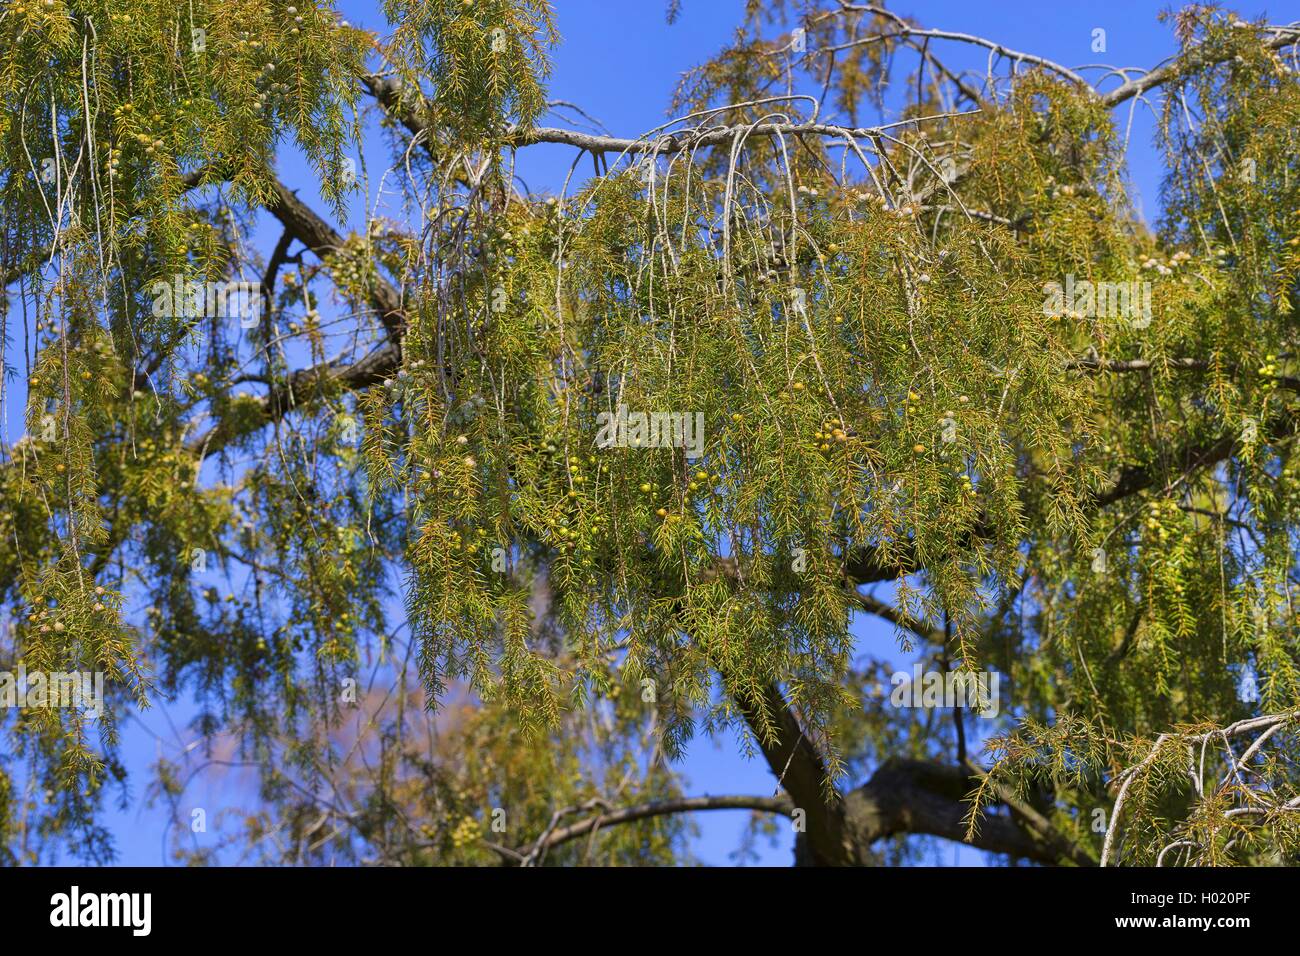 Temple juniper, Needle Juniper (Juniperus rigida), branch with immature berries Stock Photo